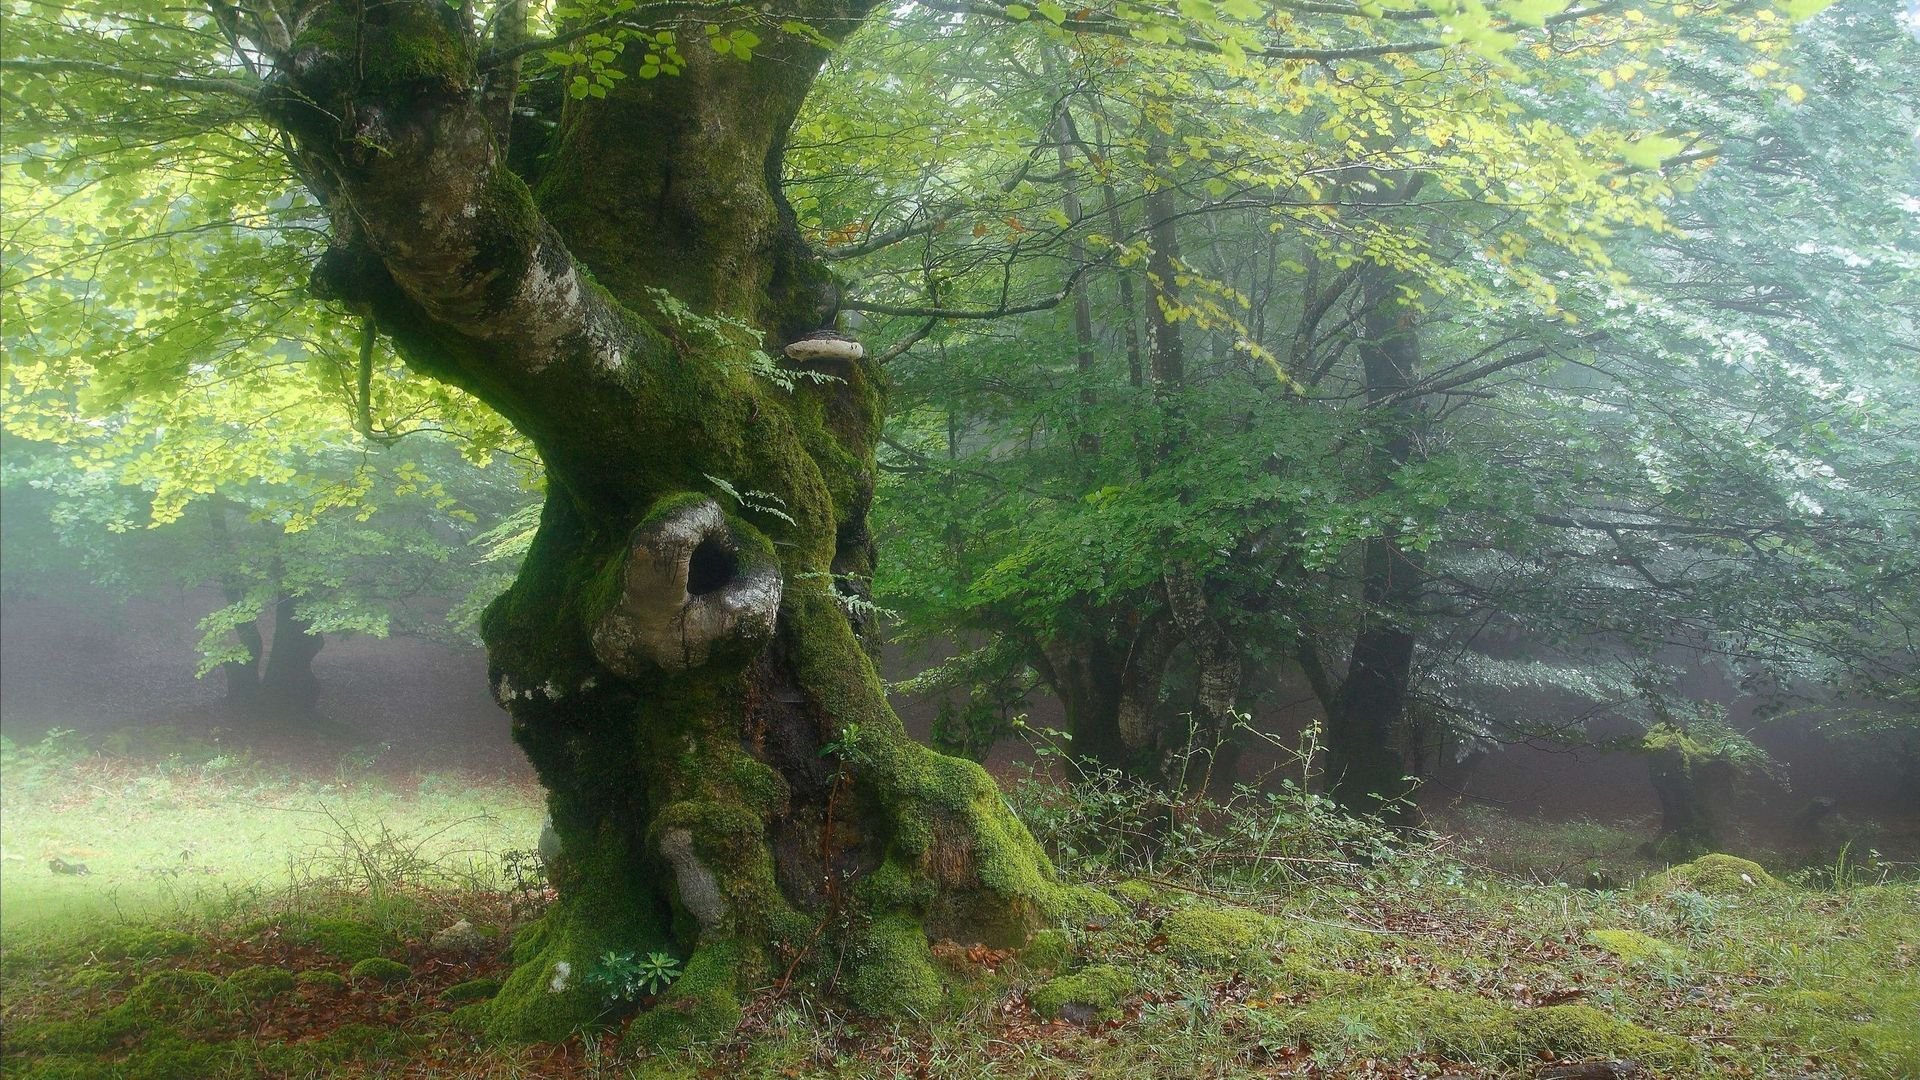 Забрались в чащу. Шервудский лес в Англии. Лесная опушка дремучего леса. Bosco delle Querce (дубовый лес). Беловежская пуща деревья.